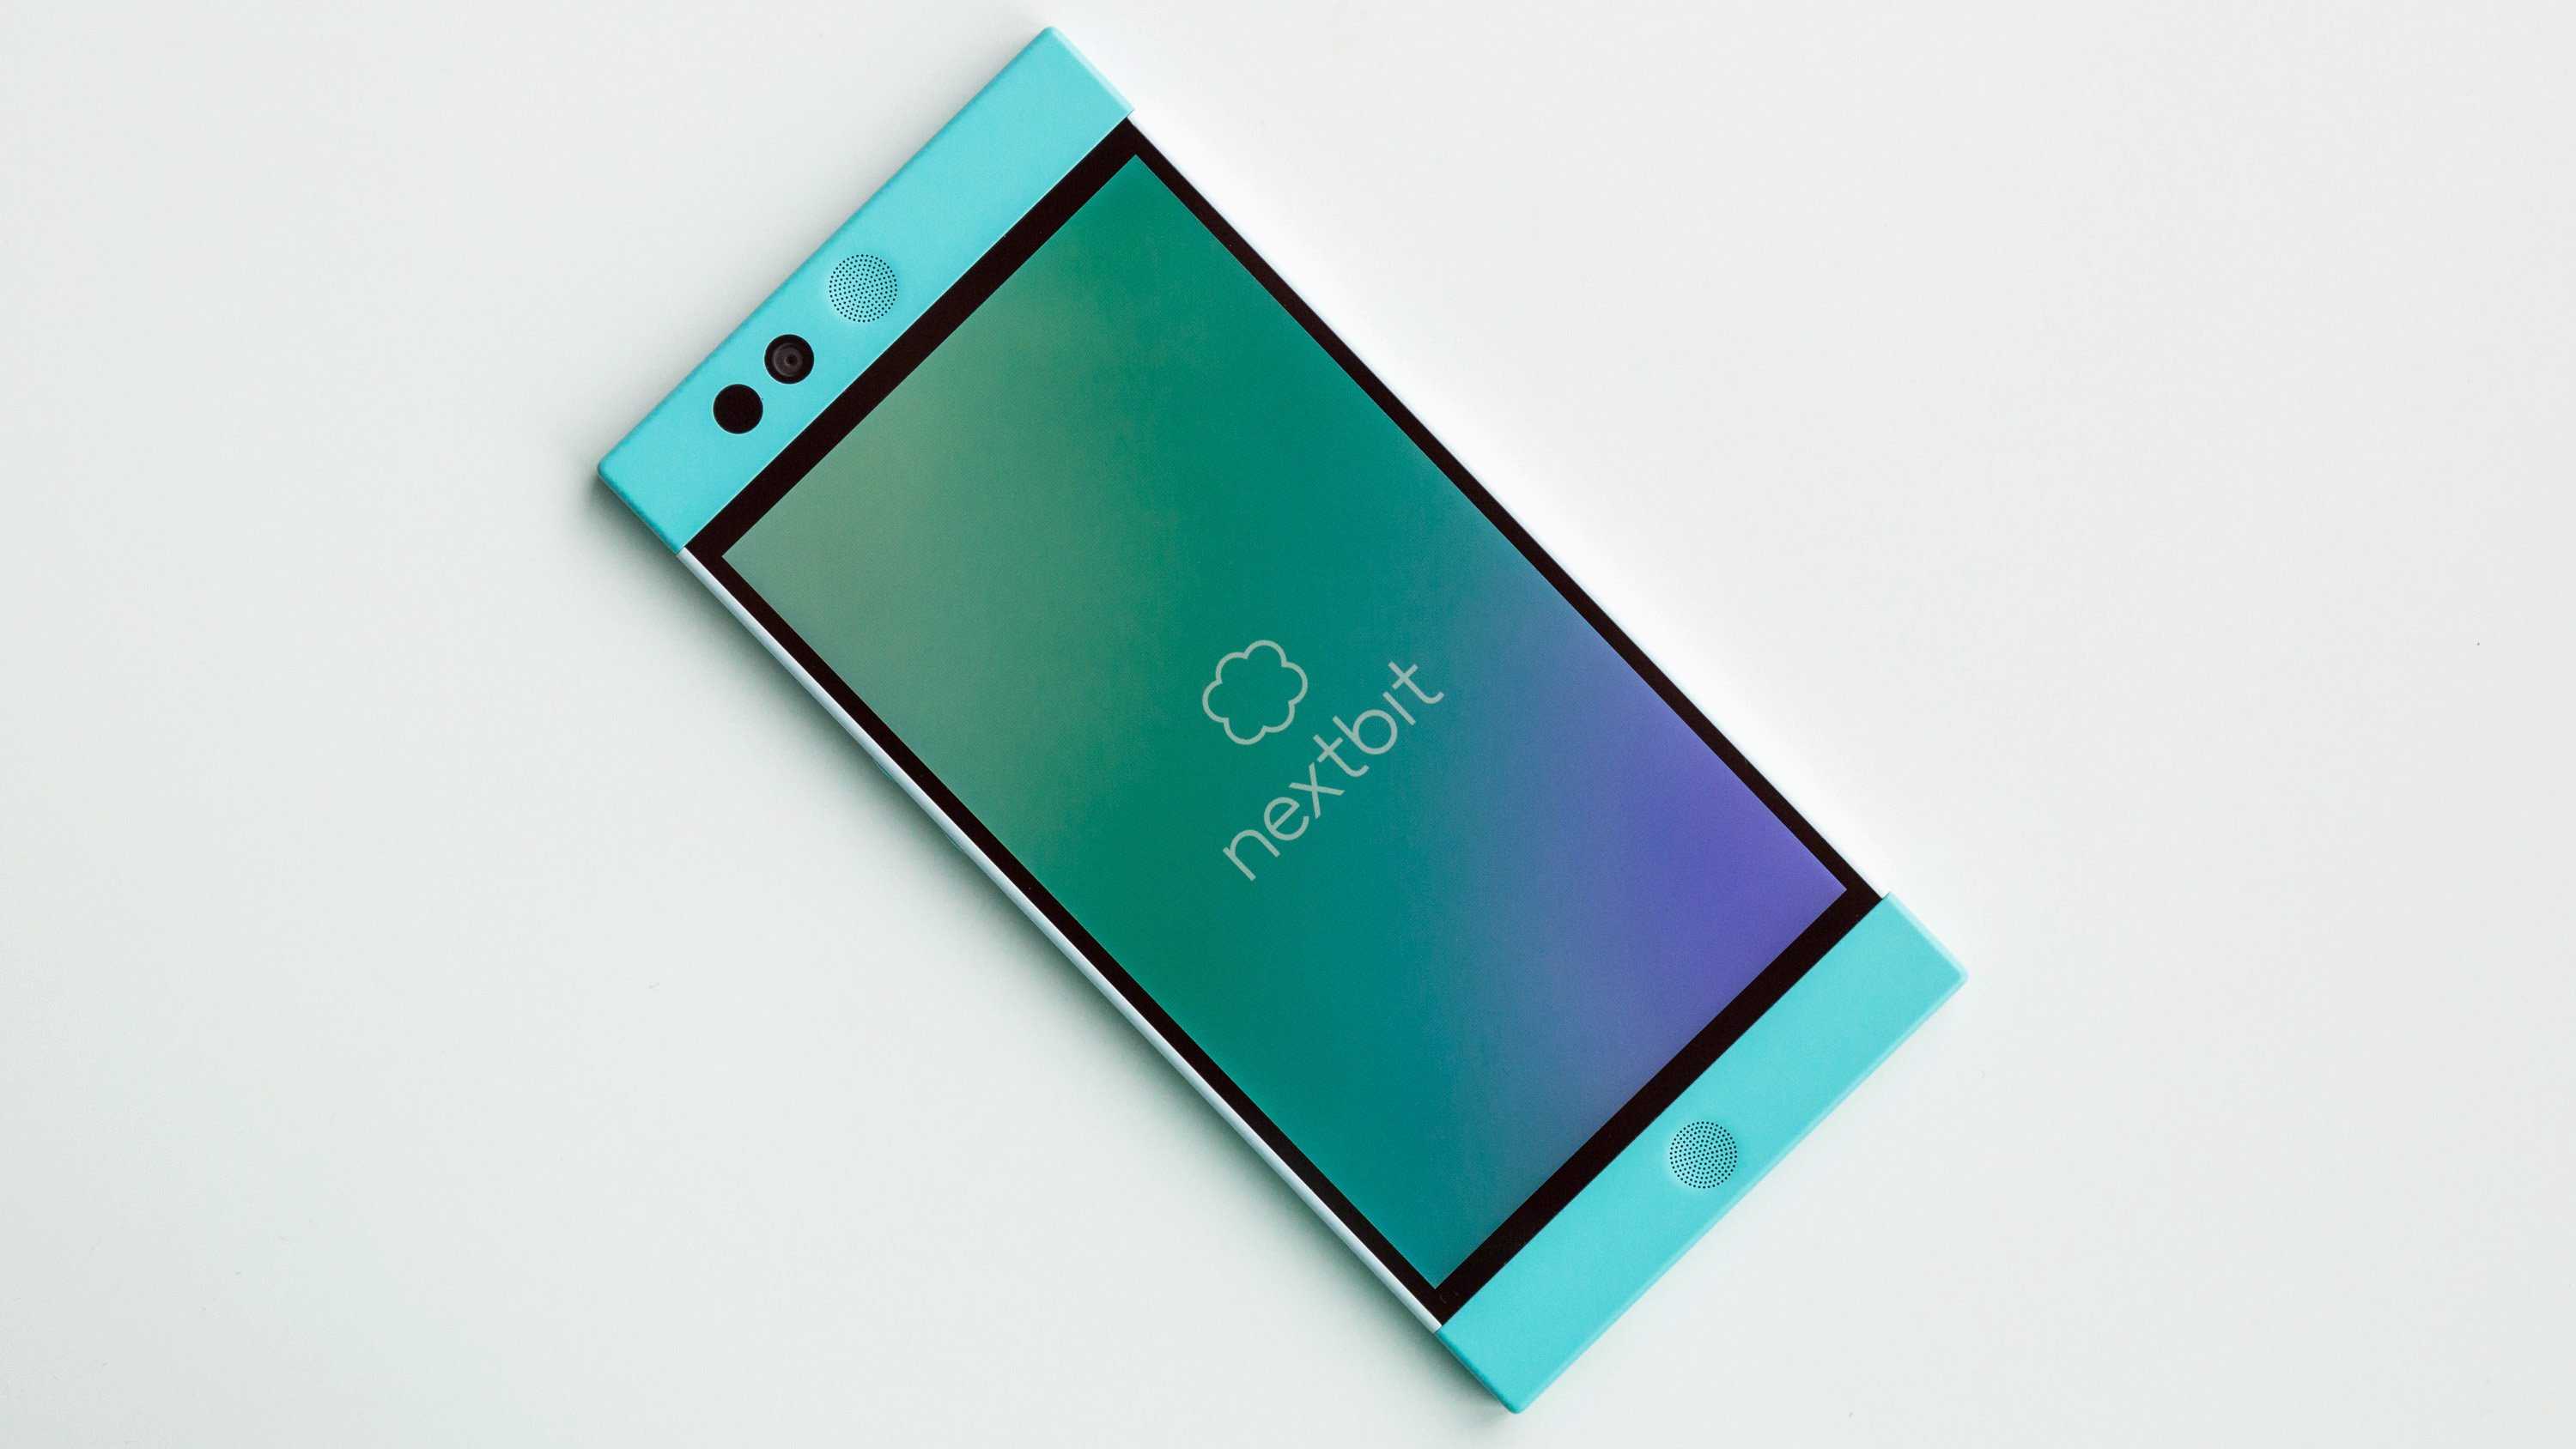 Бывший сотрудник команды Android в GoogleТом Мосс и бывший старший дизайнер HTC Скотт Кройл представили смартфон Robin, разработанный их стартапом Nextbit